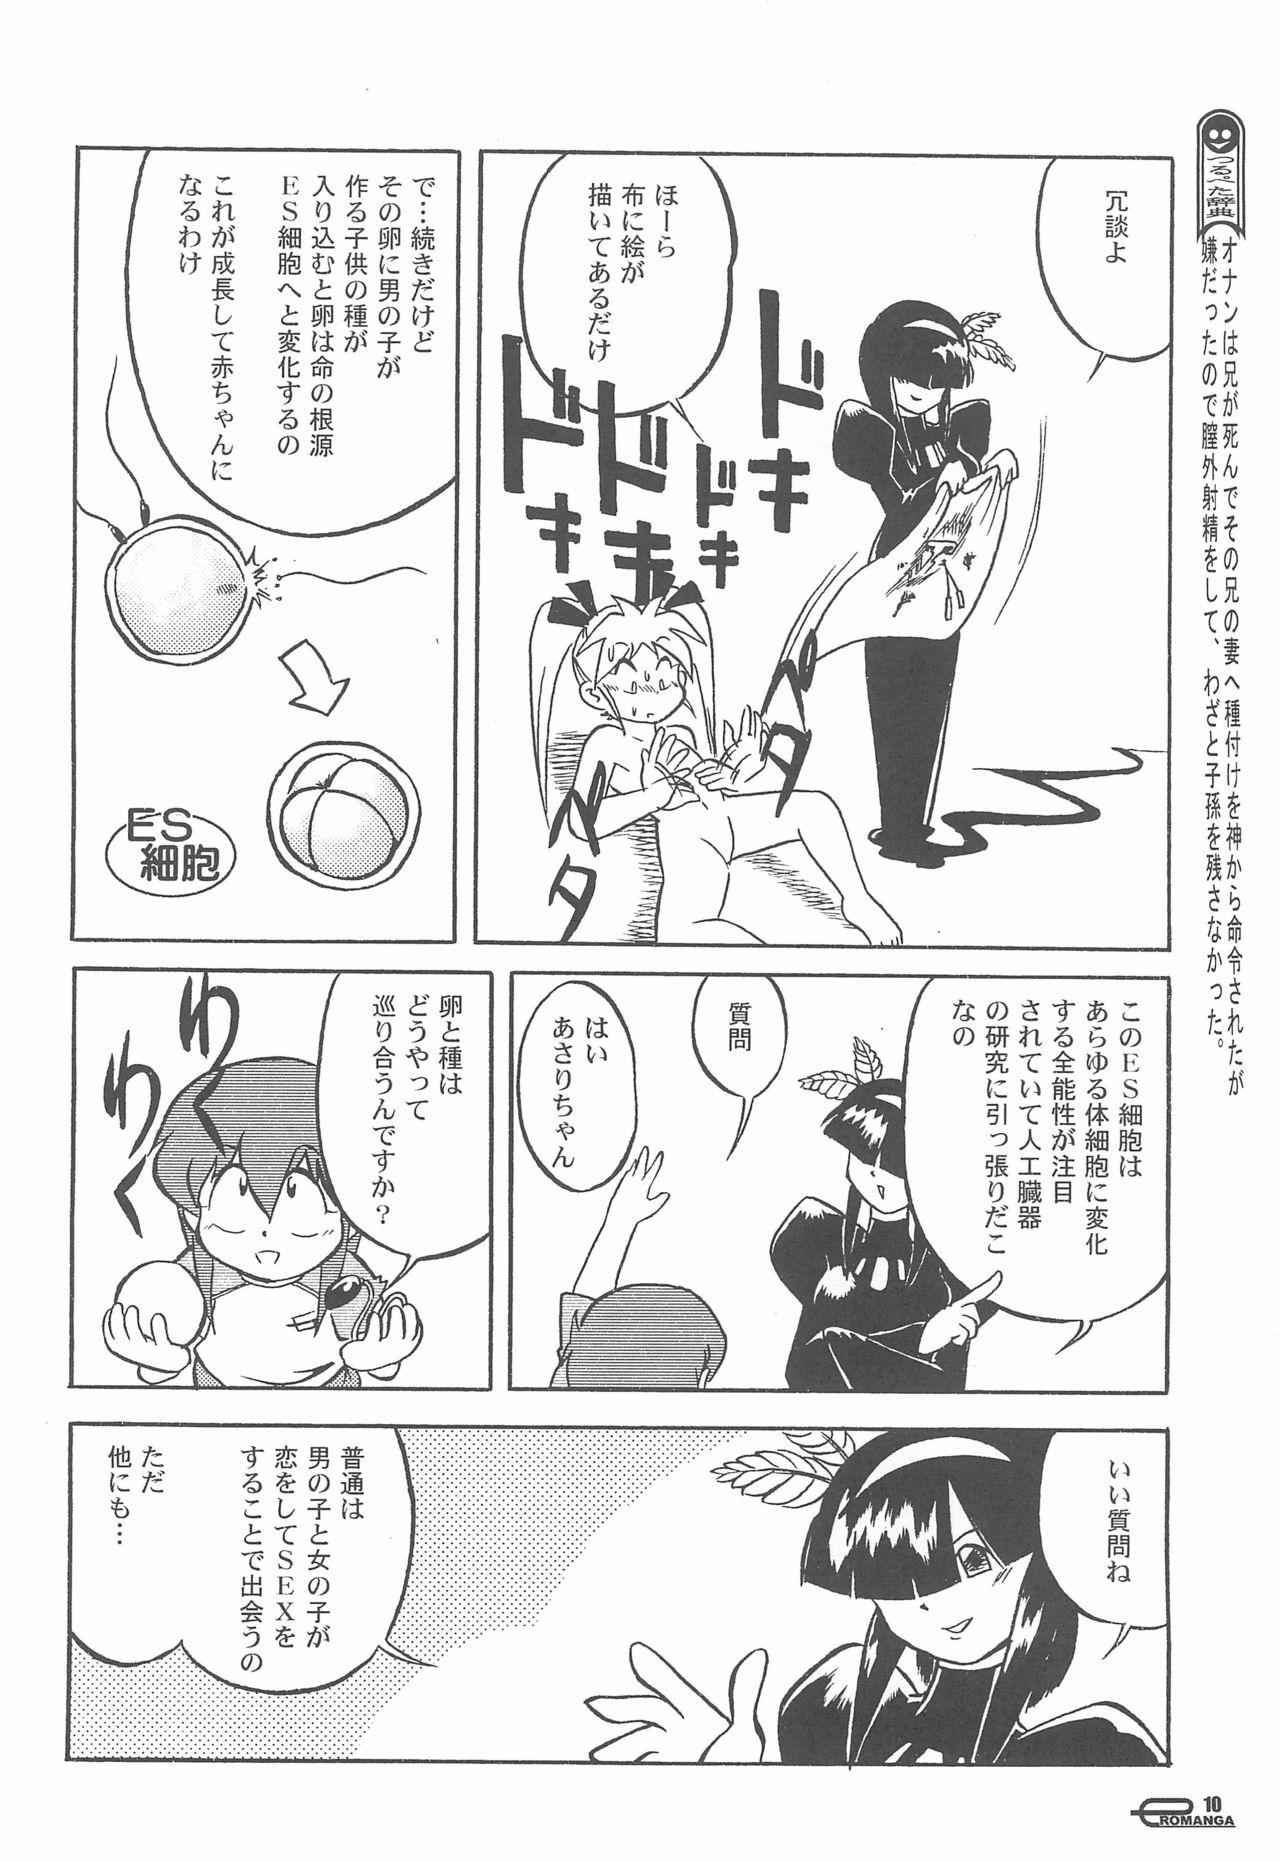 Interacial Manga Science Onna no ko no Himitsu - Manga science Dancing - Page 12